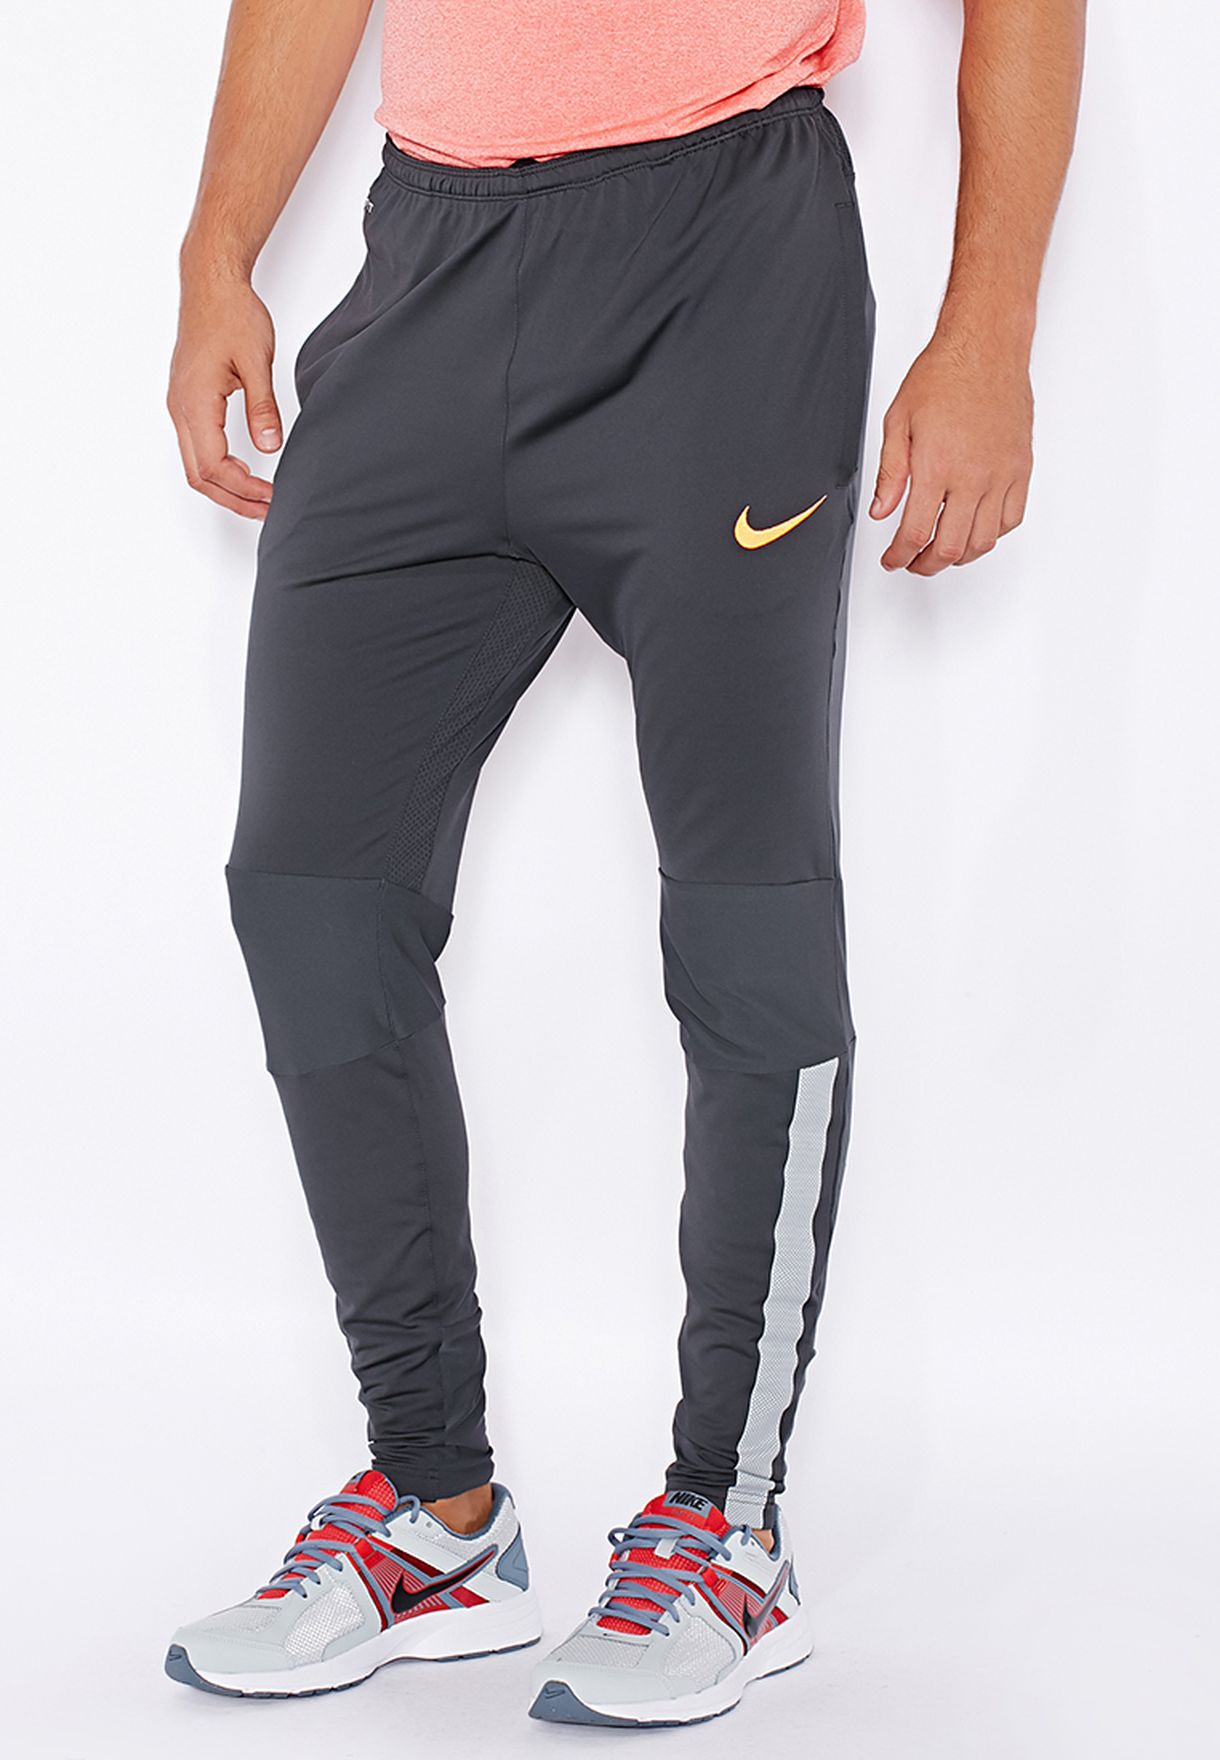 Educación escolar consonante cinta Buy Nike black Select Strike Tech Pants for Men in MENA, Worldwide